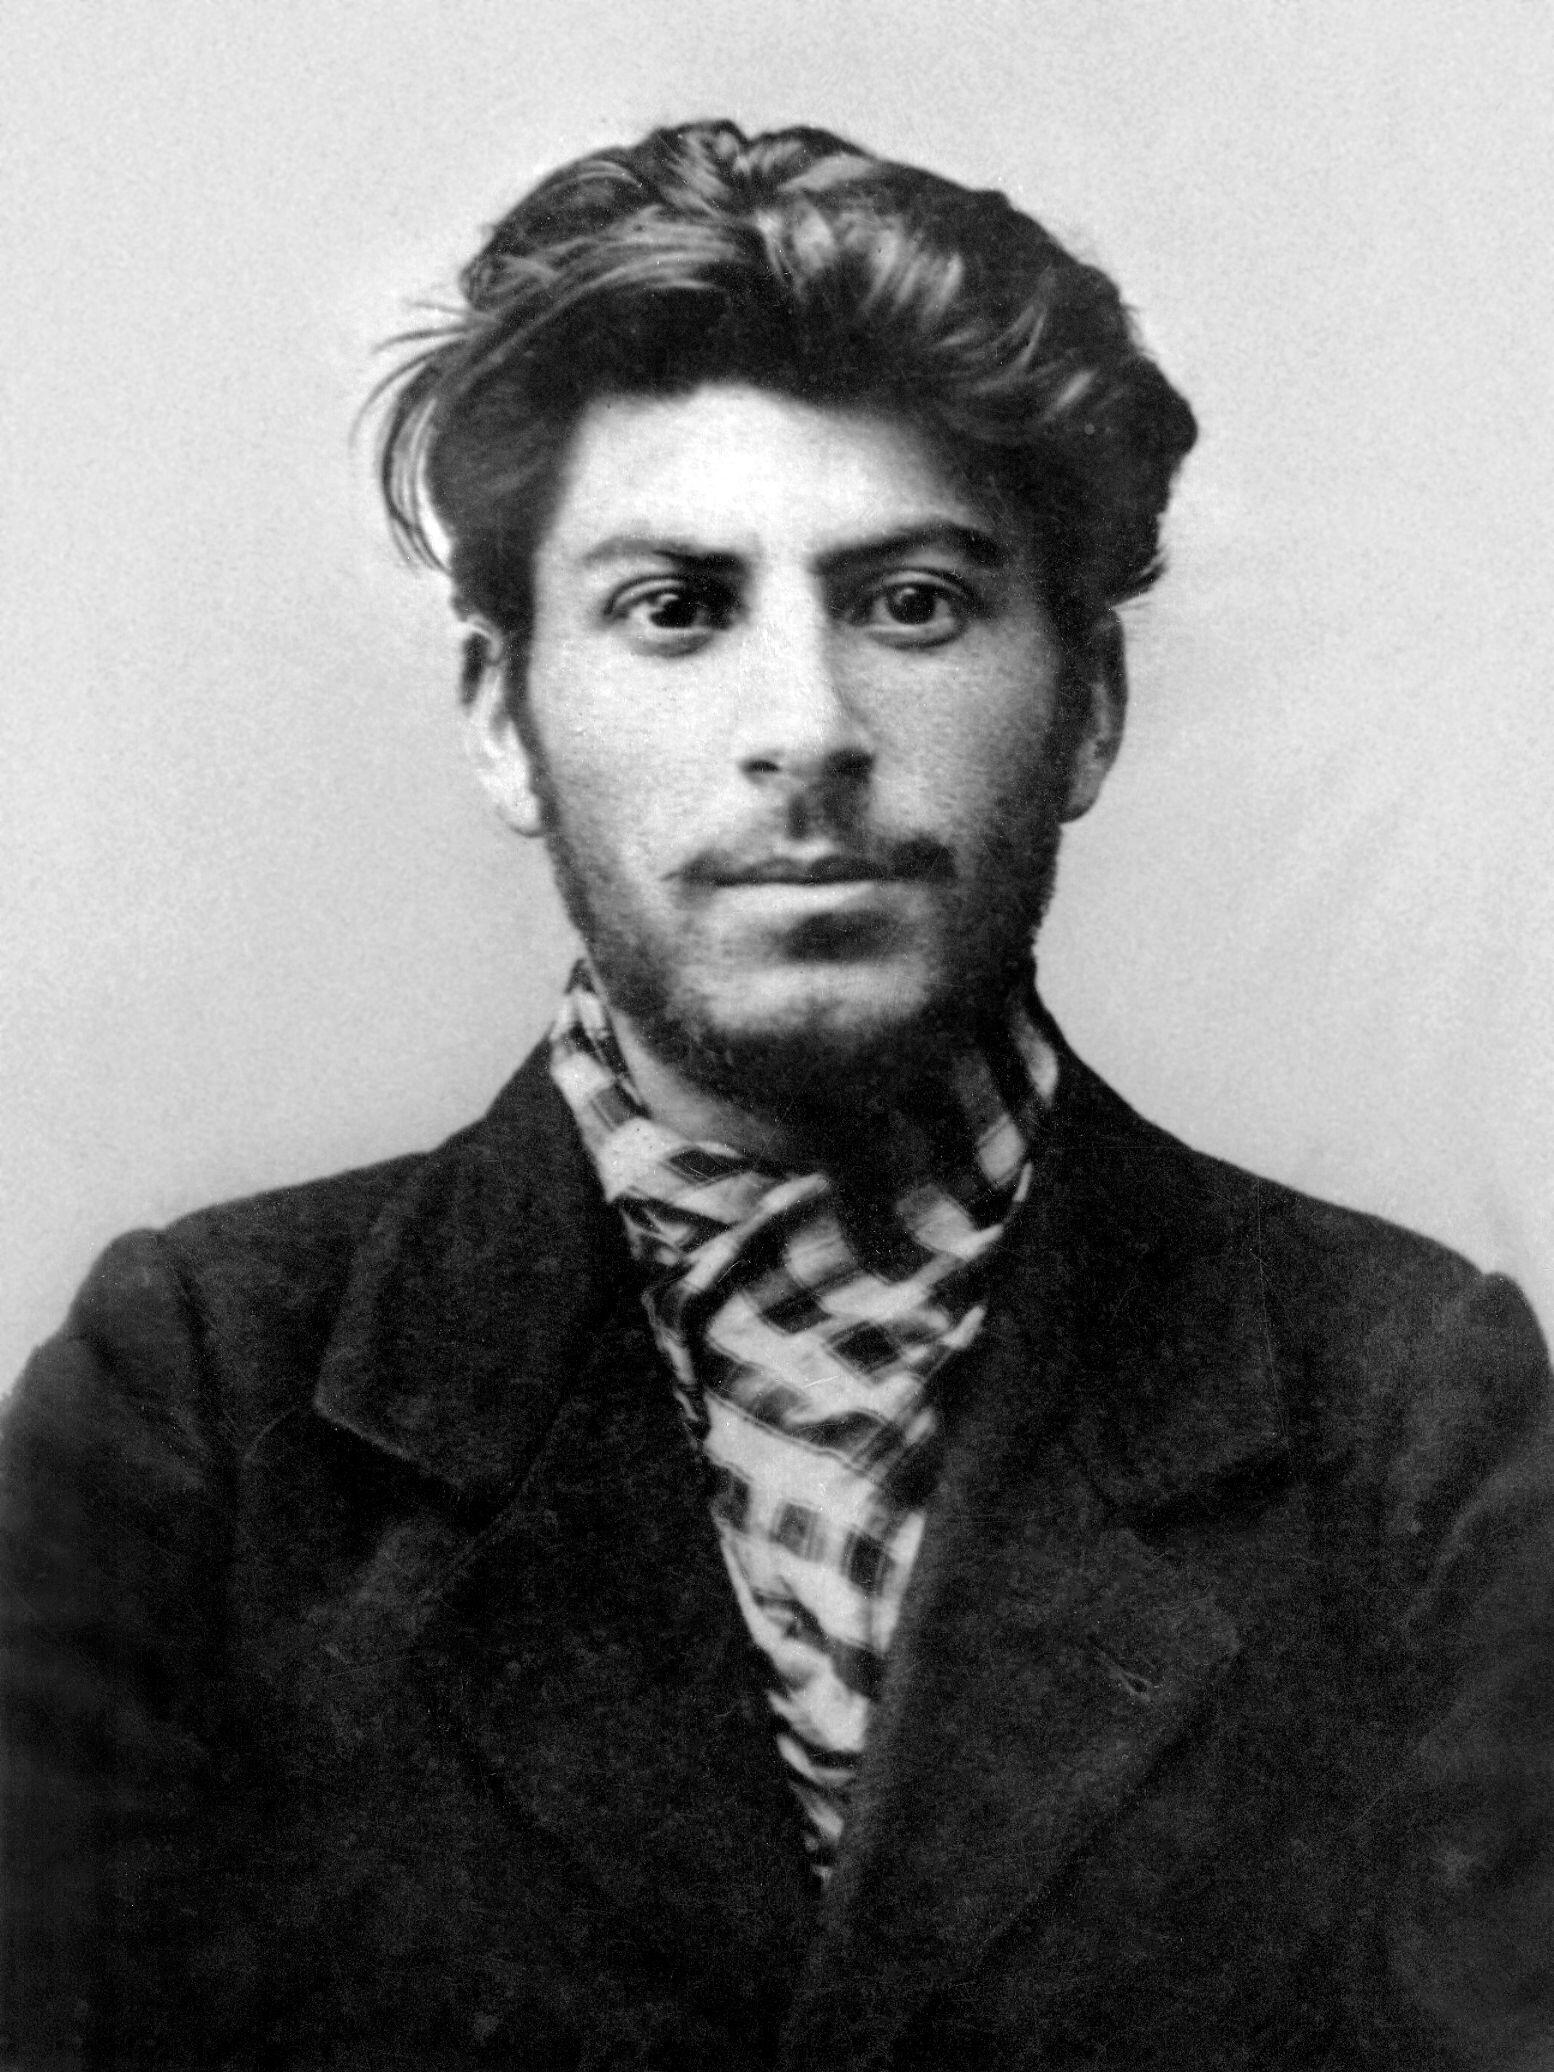 Trocki wspominał wiedeńskie spotkanie ze Stalinem: „Siedziałem sobie przy samowarze, nagle do pokoju wszedł nieznany mężczyzna. Był niski, chudy, szarobrązowa twarz pokryta bliznami po ospie… W jego oczach nie było cienia życzliwości”